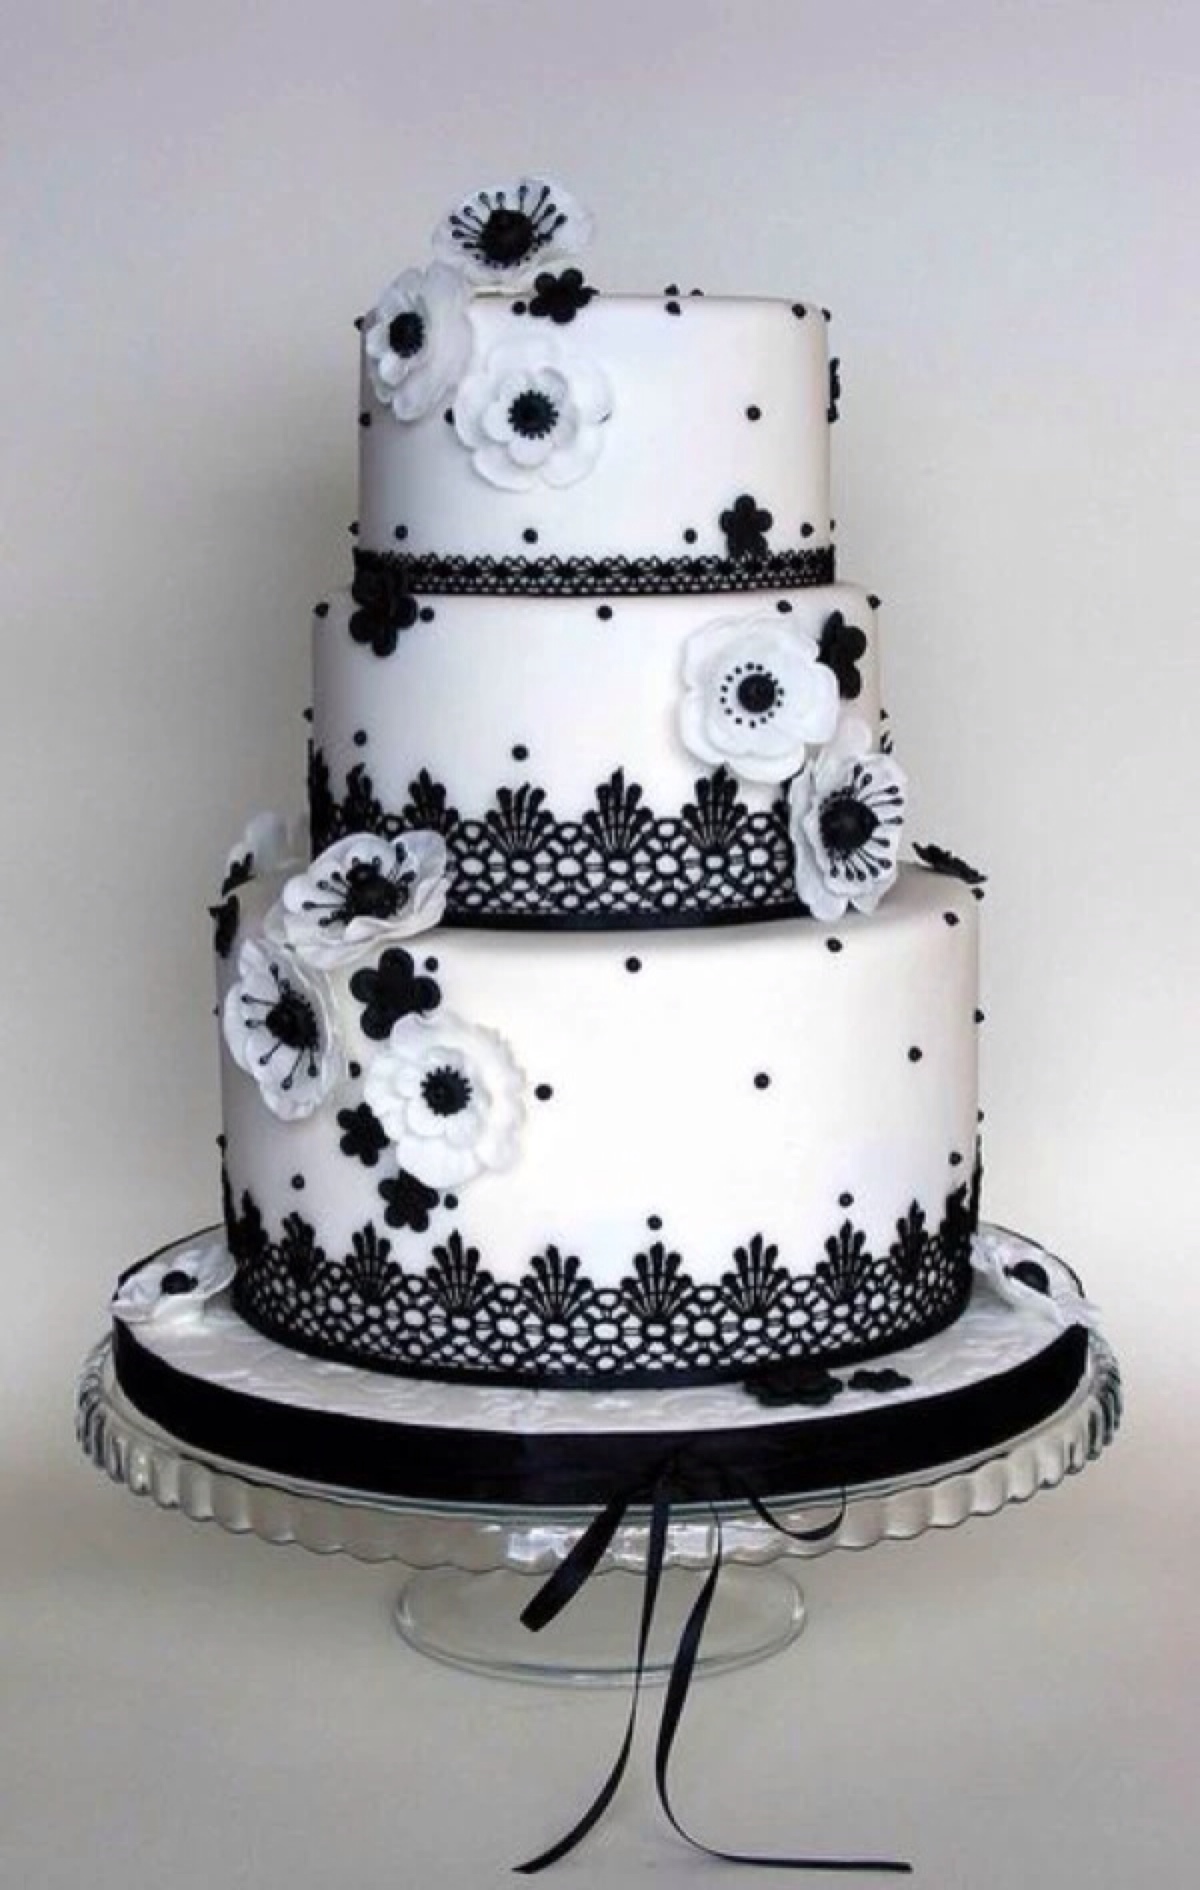 翻糖婚礼鲜花黑白蛋糕甜点